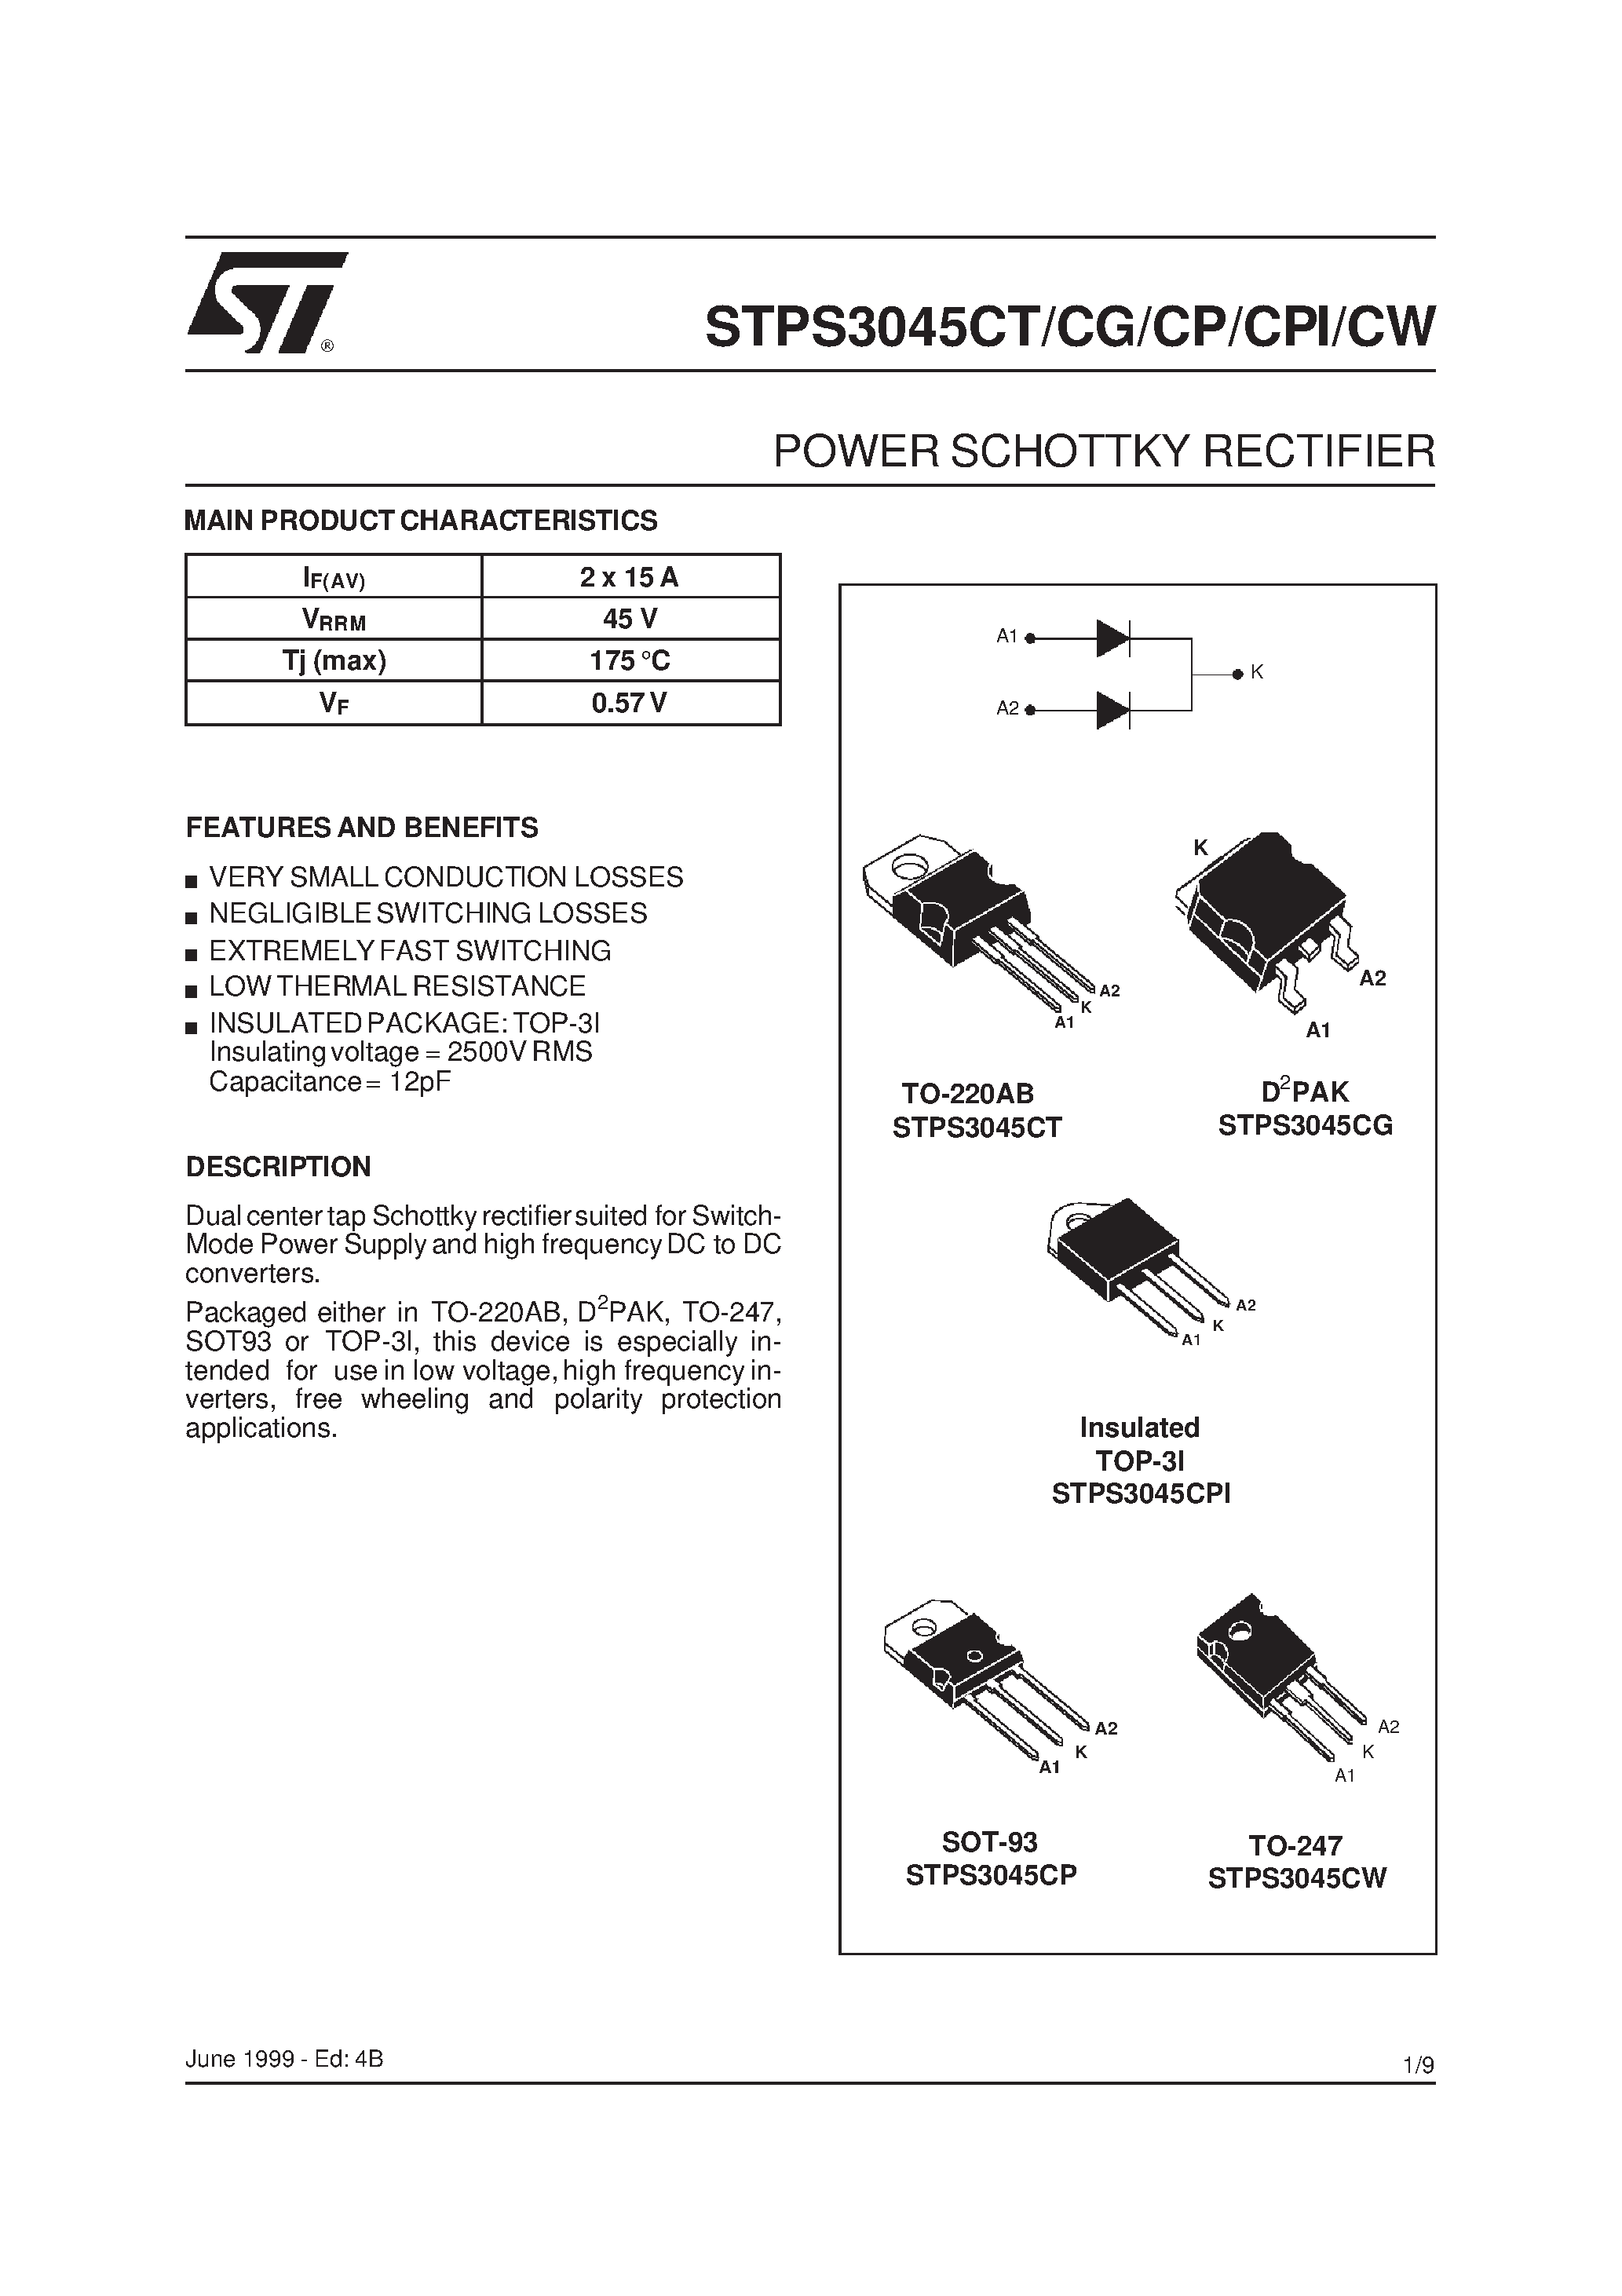 Datasheet STPS3045CG - (STPS3045CT/CG/CP/CPI/CW) POWER SCHOTTKY RECTIFIER page 1